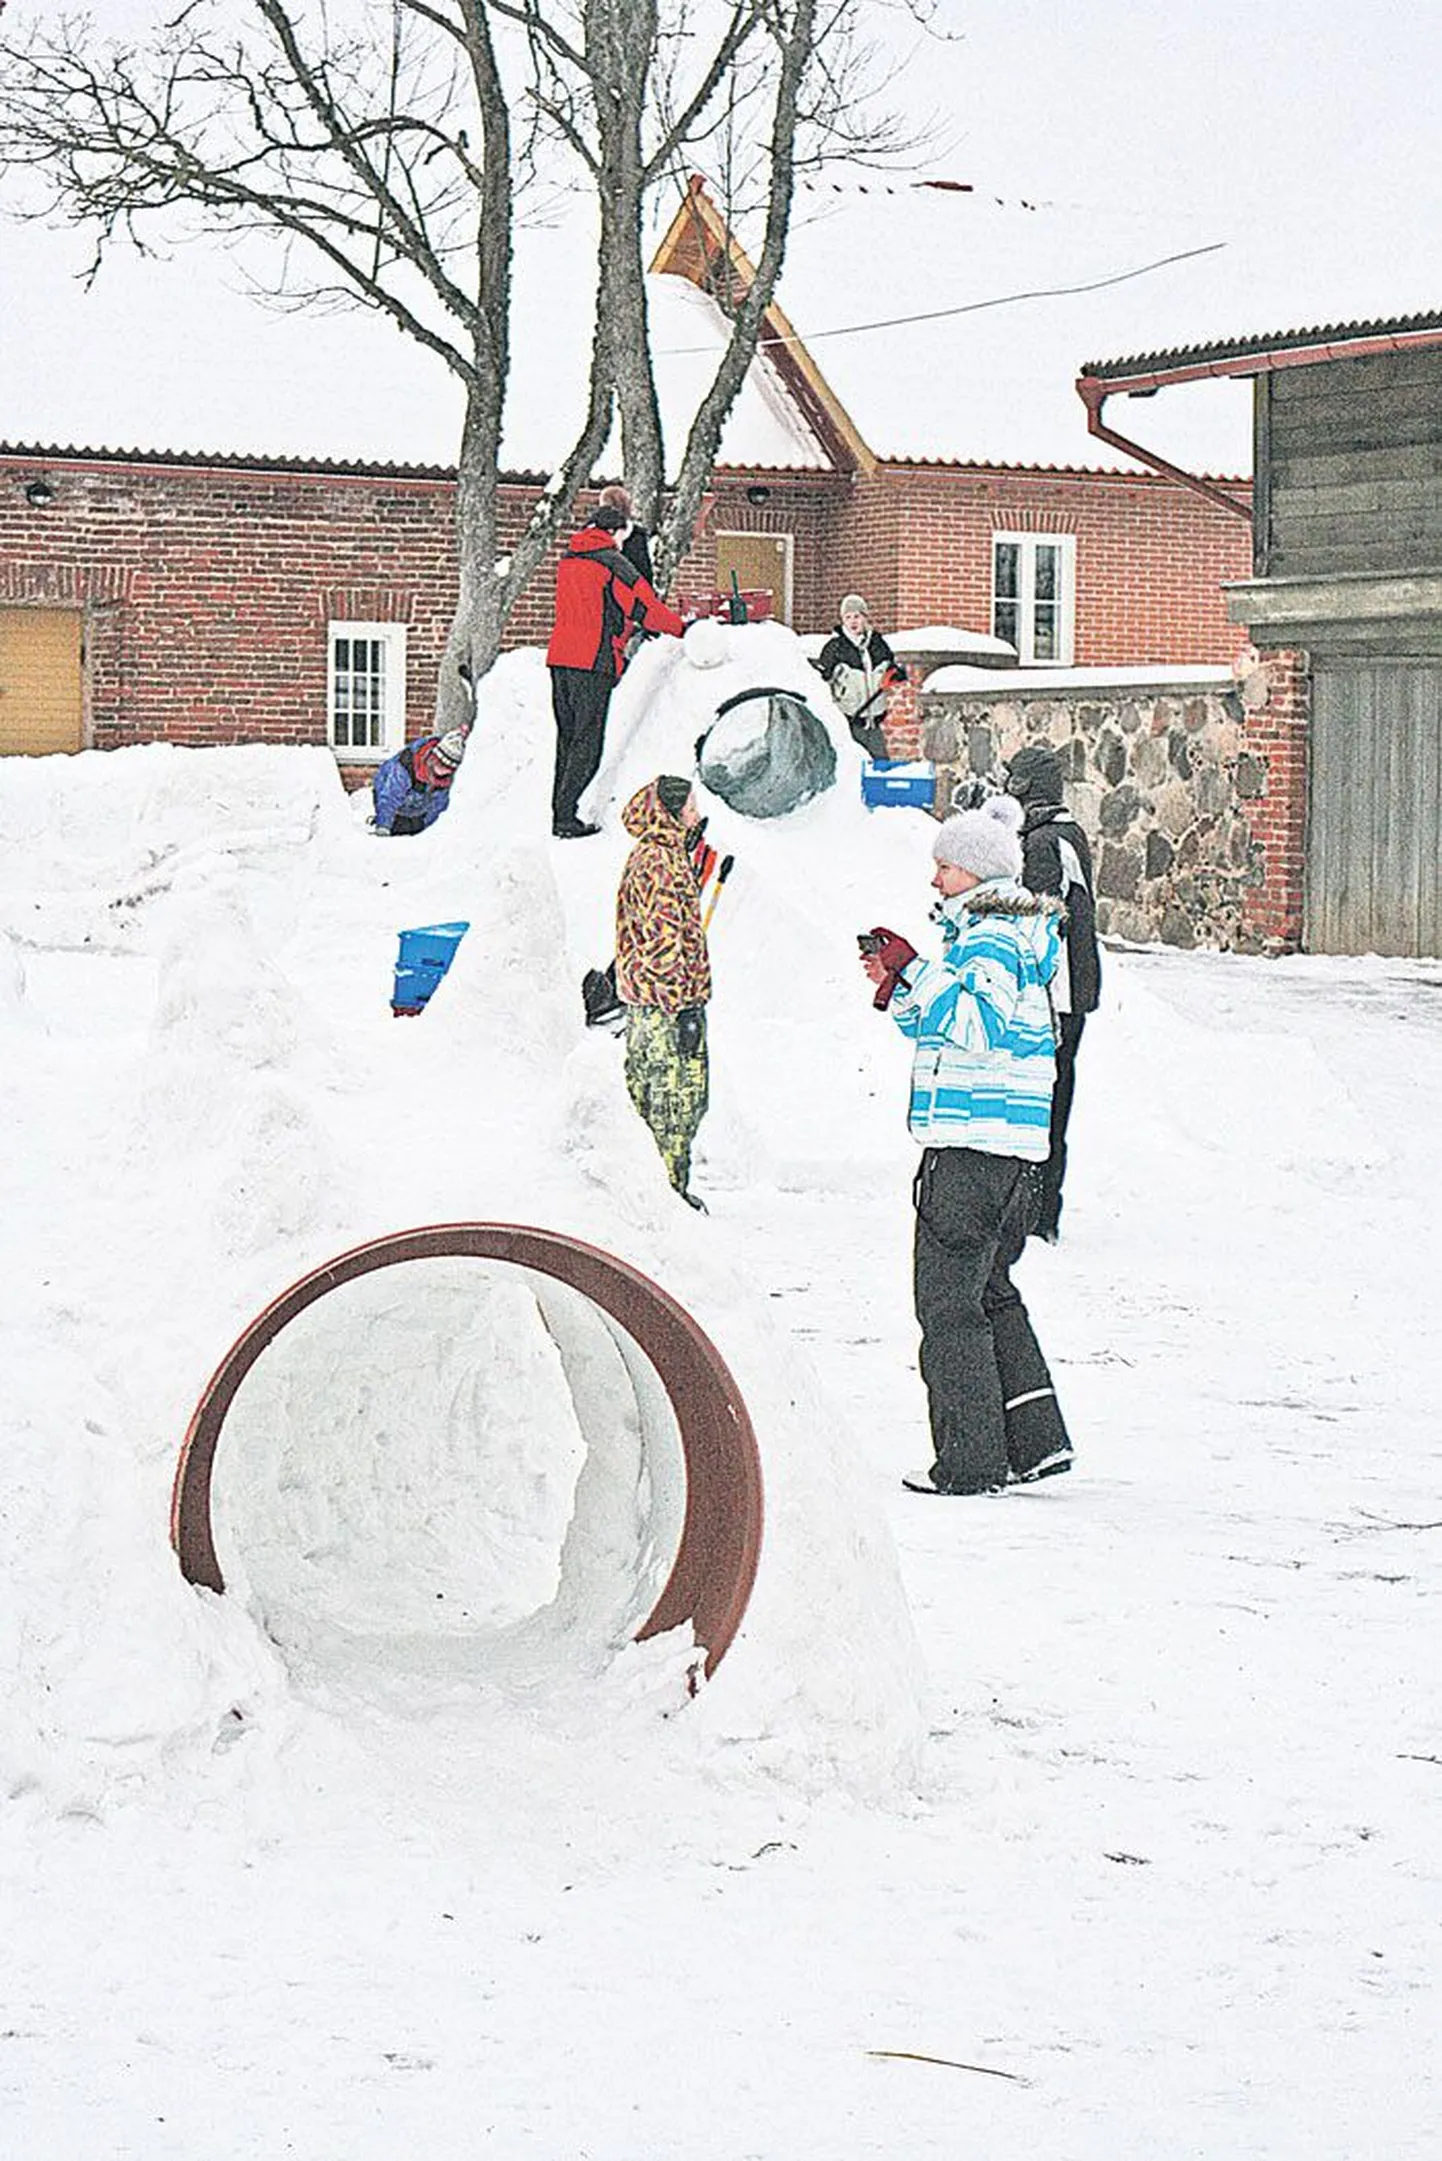 Tartu kunstikooli kolme kursuse õpilased rassisid terve kolmapäeva maanteemuuseumi õuele kuut lumekuju ehitades. Töö kõrvalt jäi aega ka lustimiseks ja vastsete liuradade katsetamiseks.